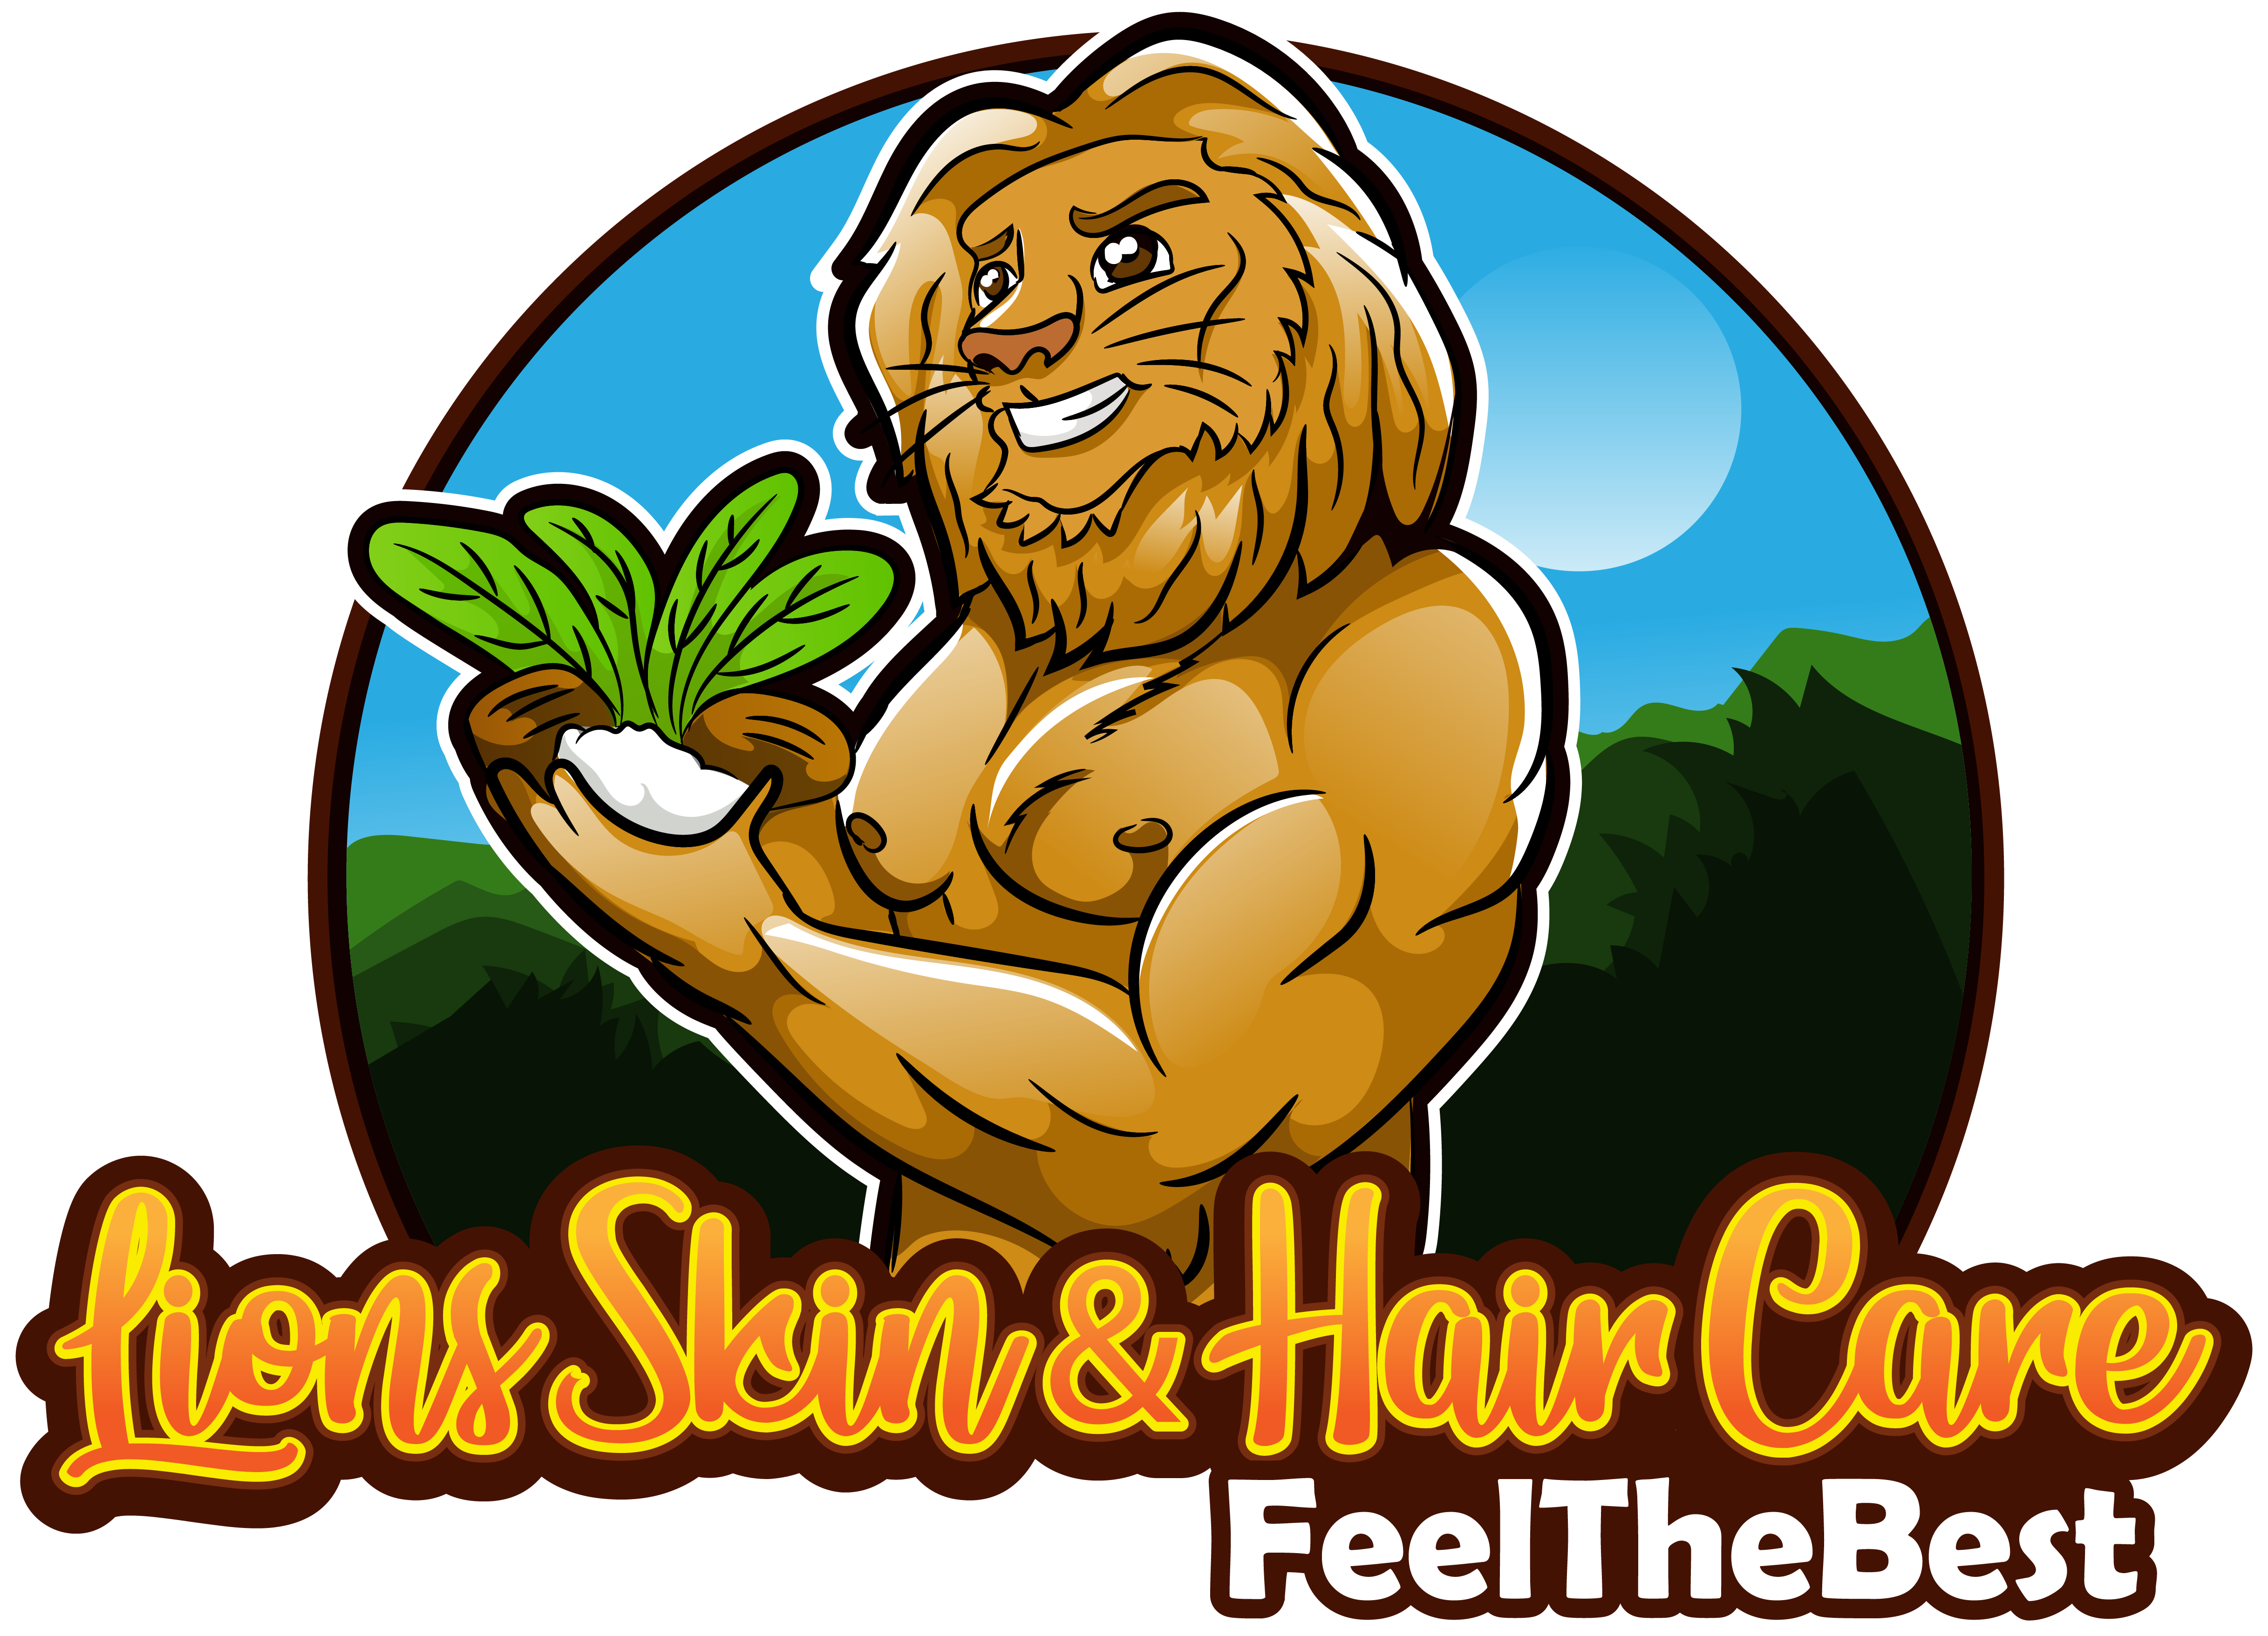 Lion Skin & Hair Care